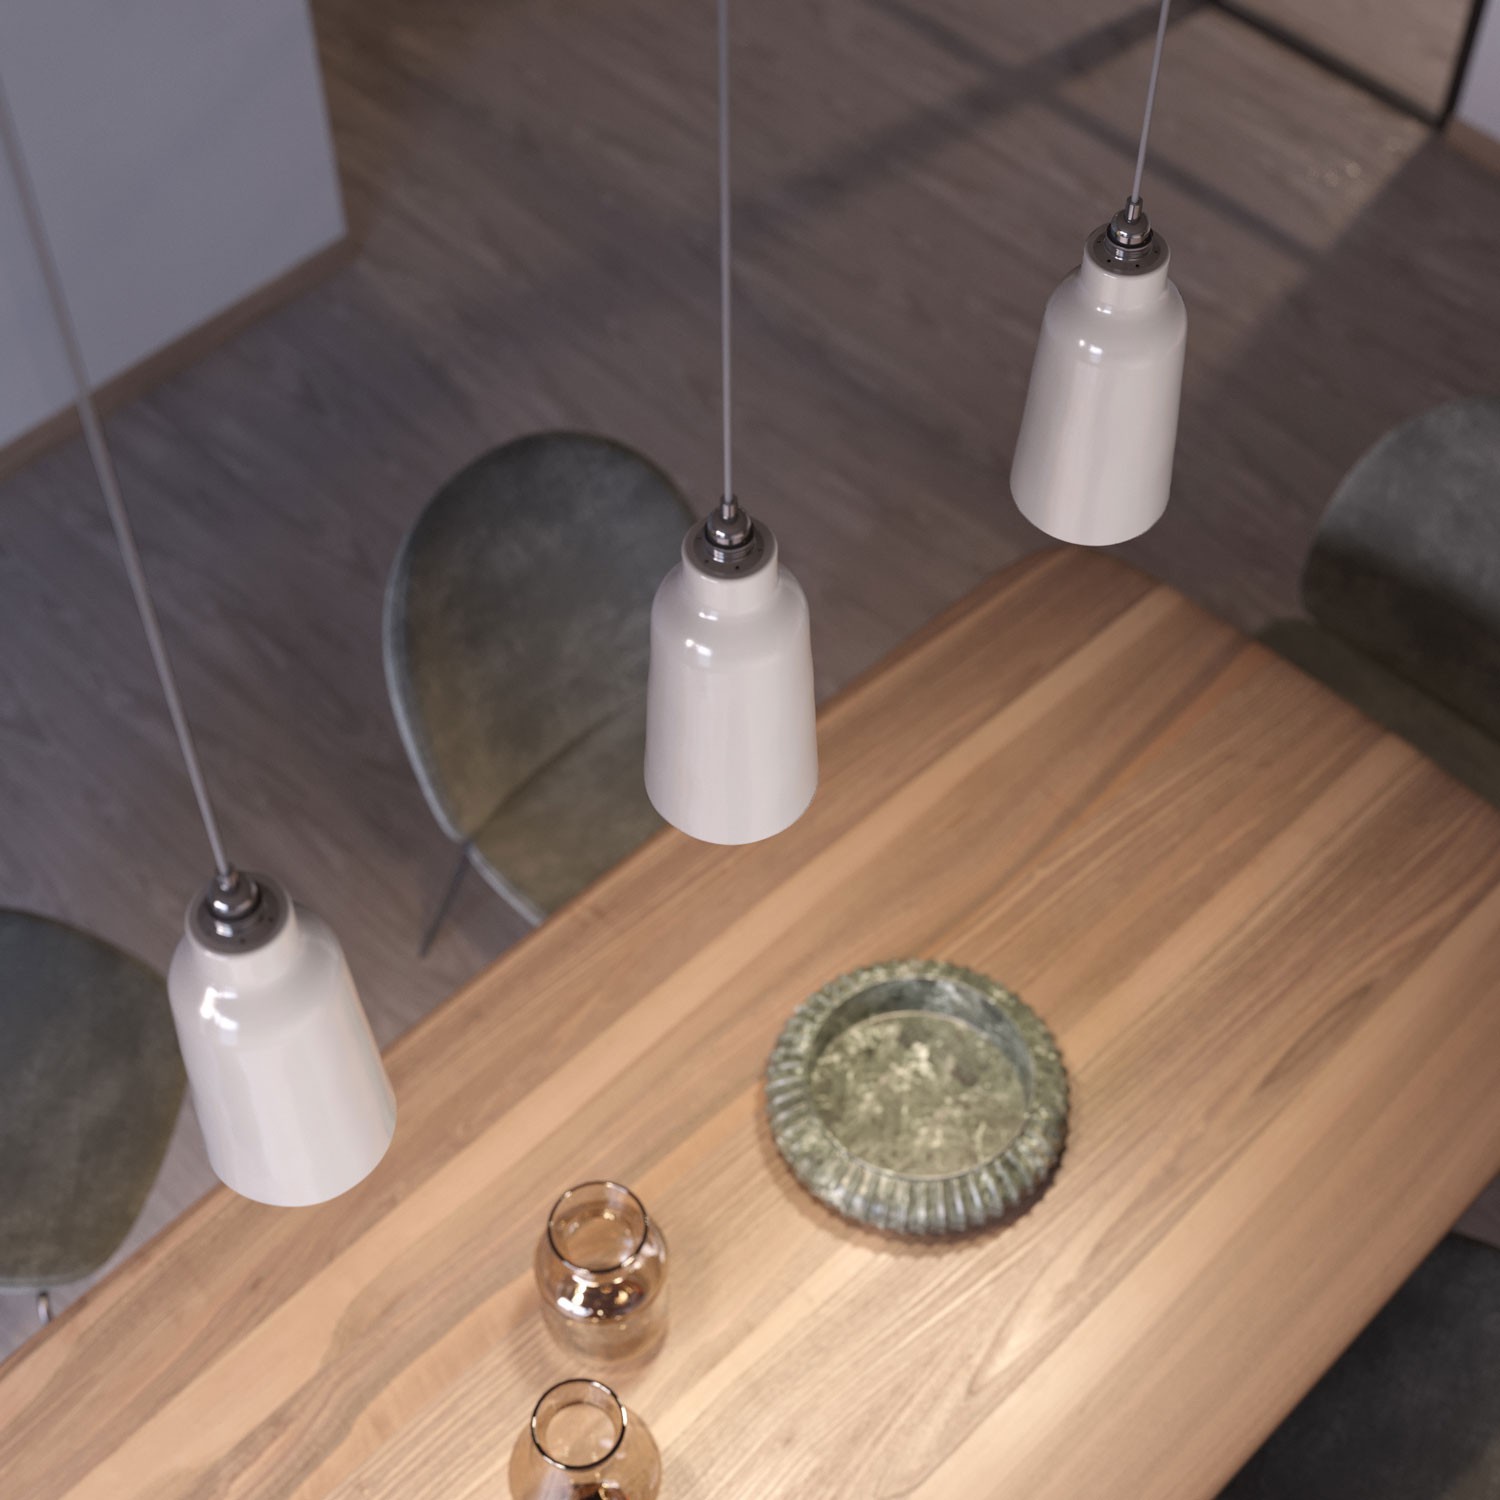 Lámpara colgante hecha en Italia con cable textil, bombilla, pantalla Botella de cerámica y acabados metálicos